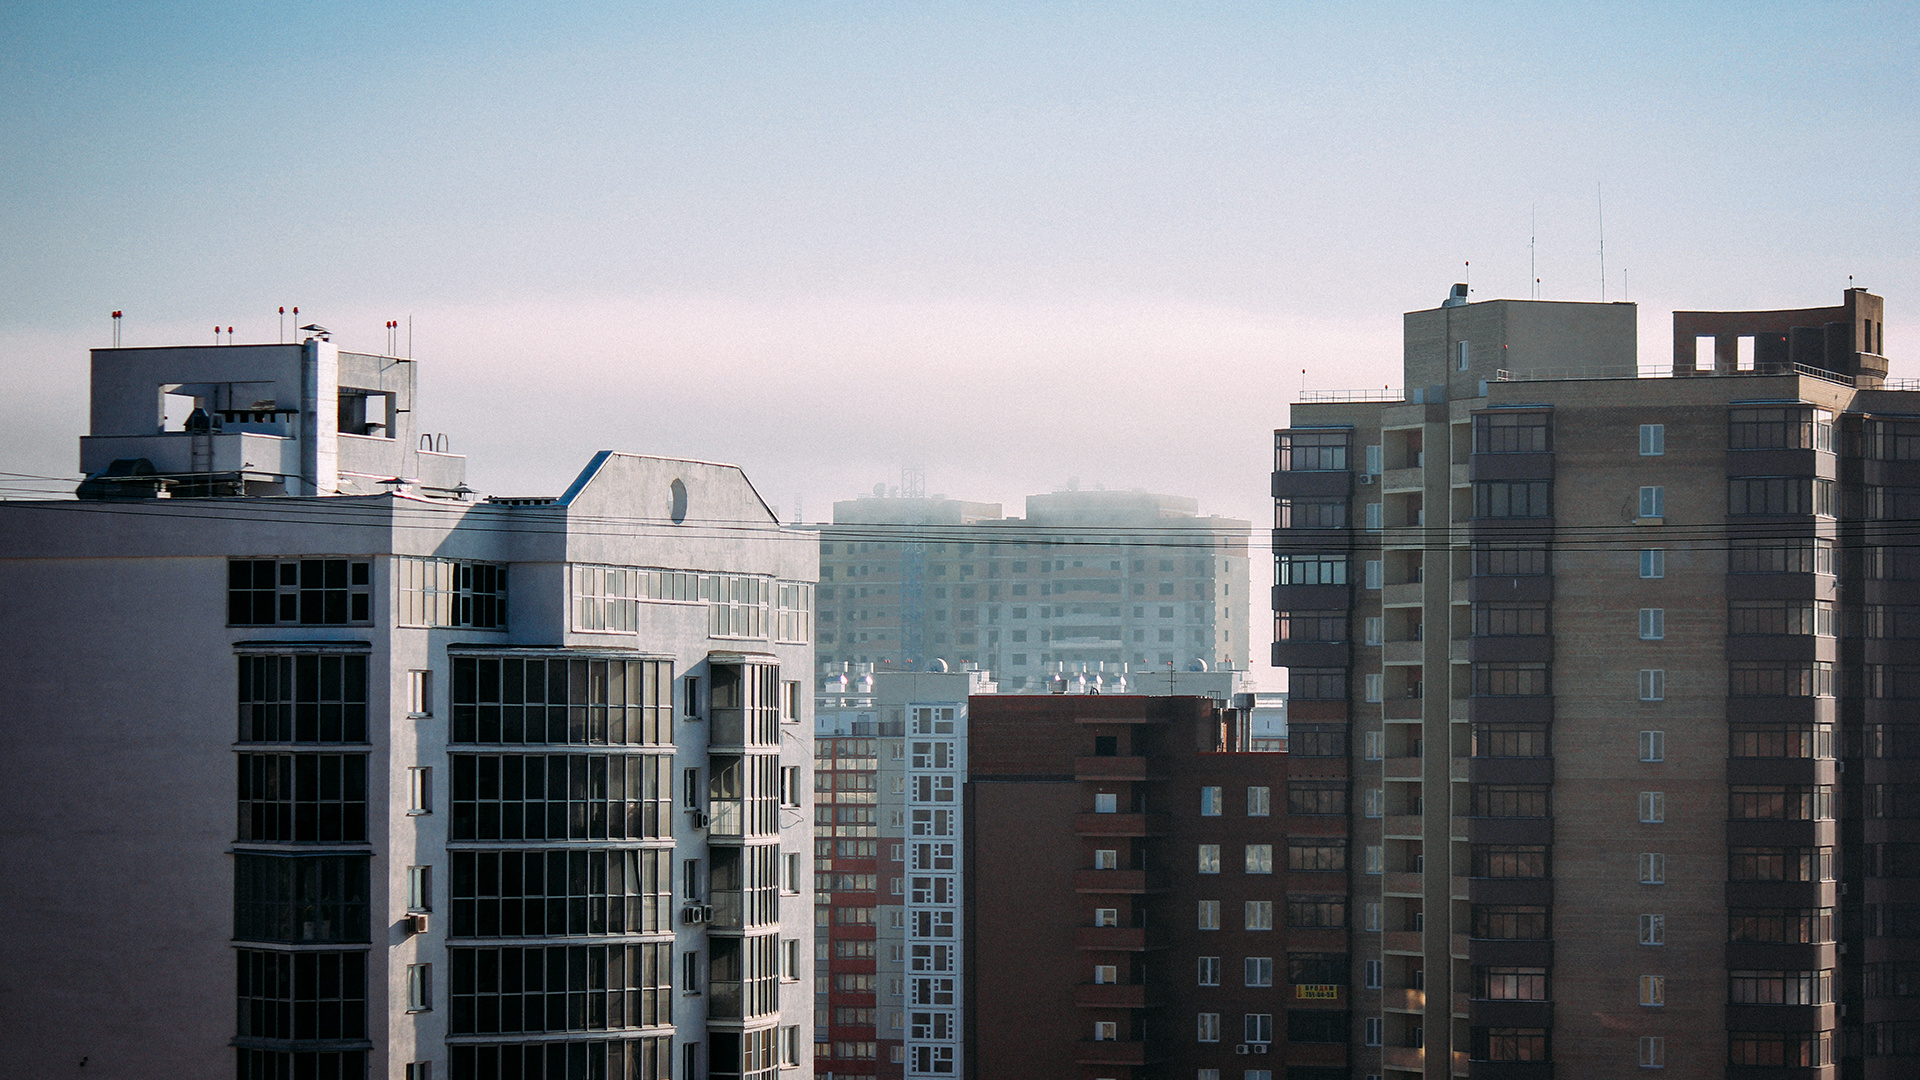 Продлили льготные ипотеки: стоит ли Челябинску ждать скачка цен на квартиры?